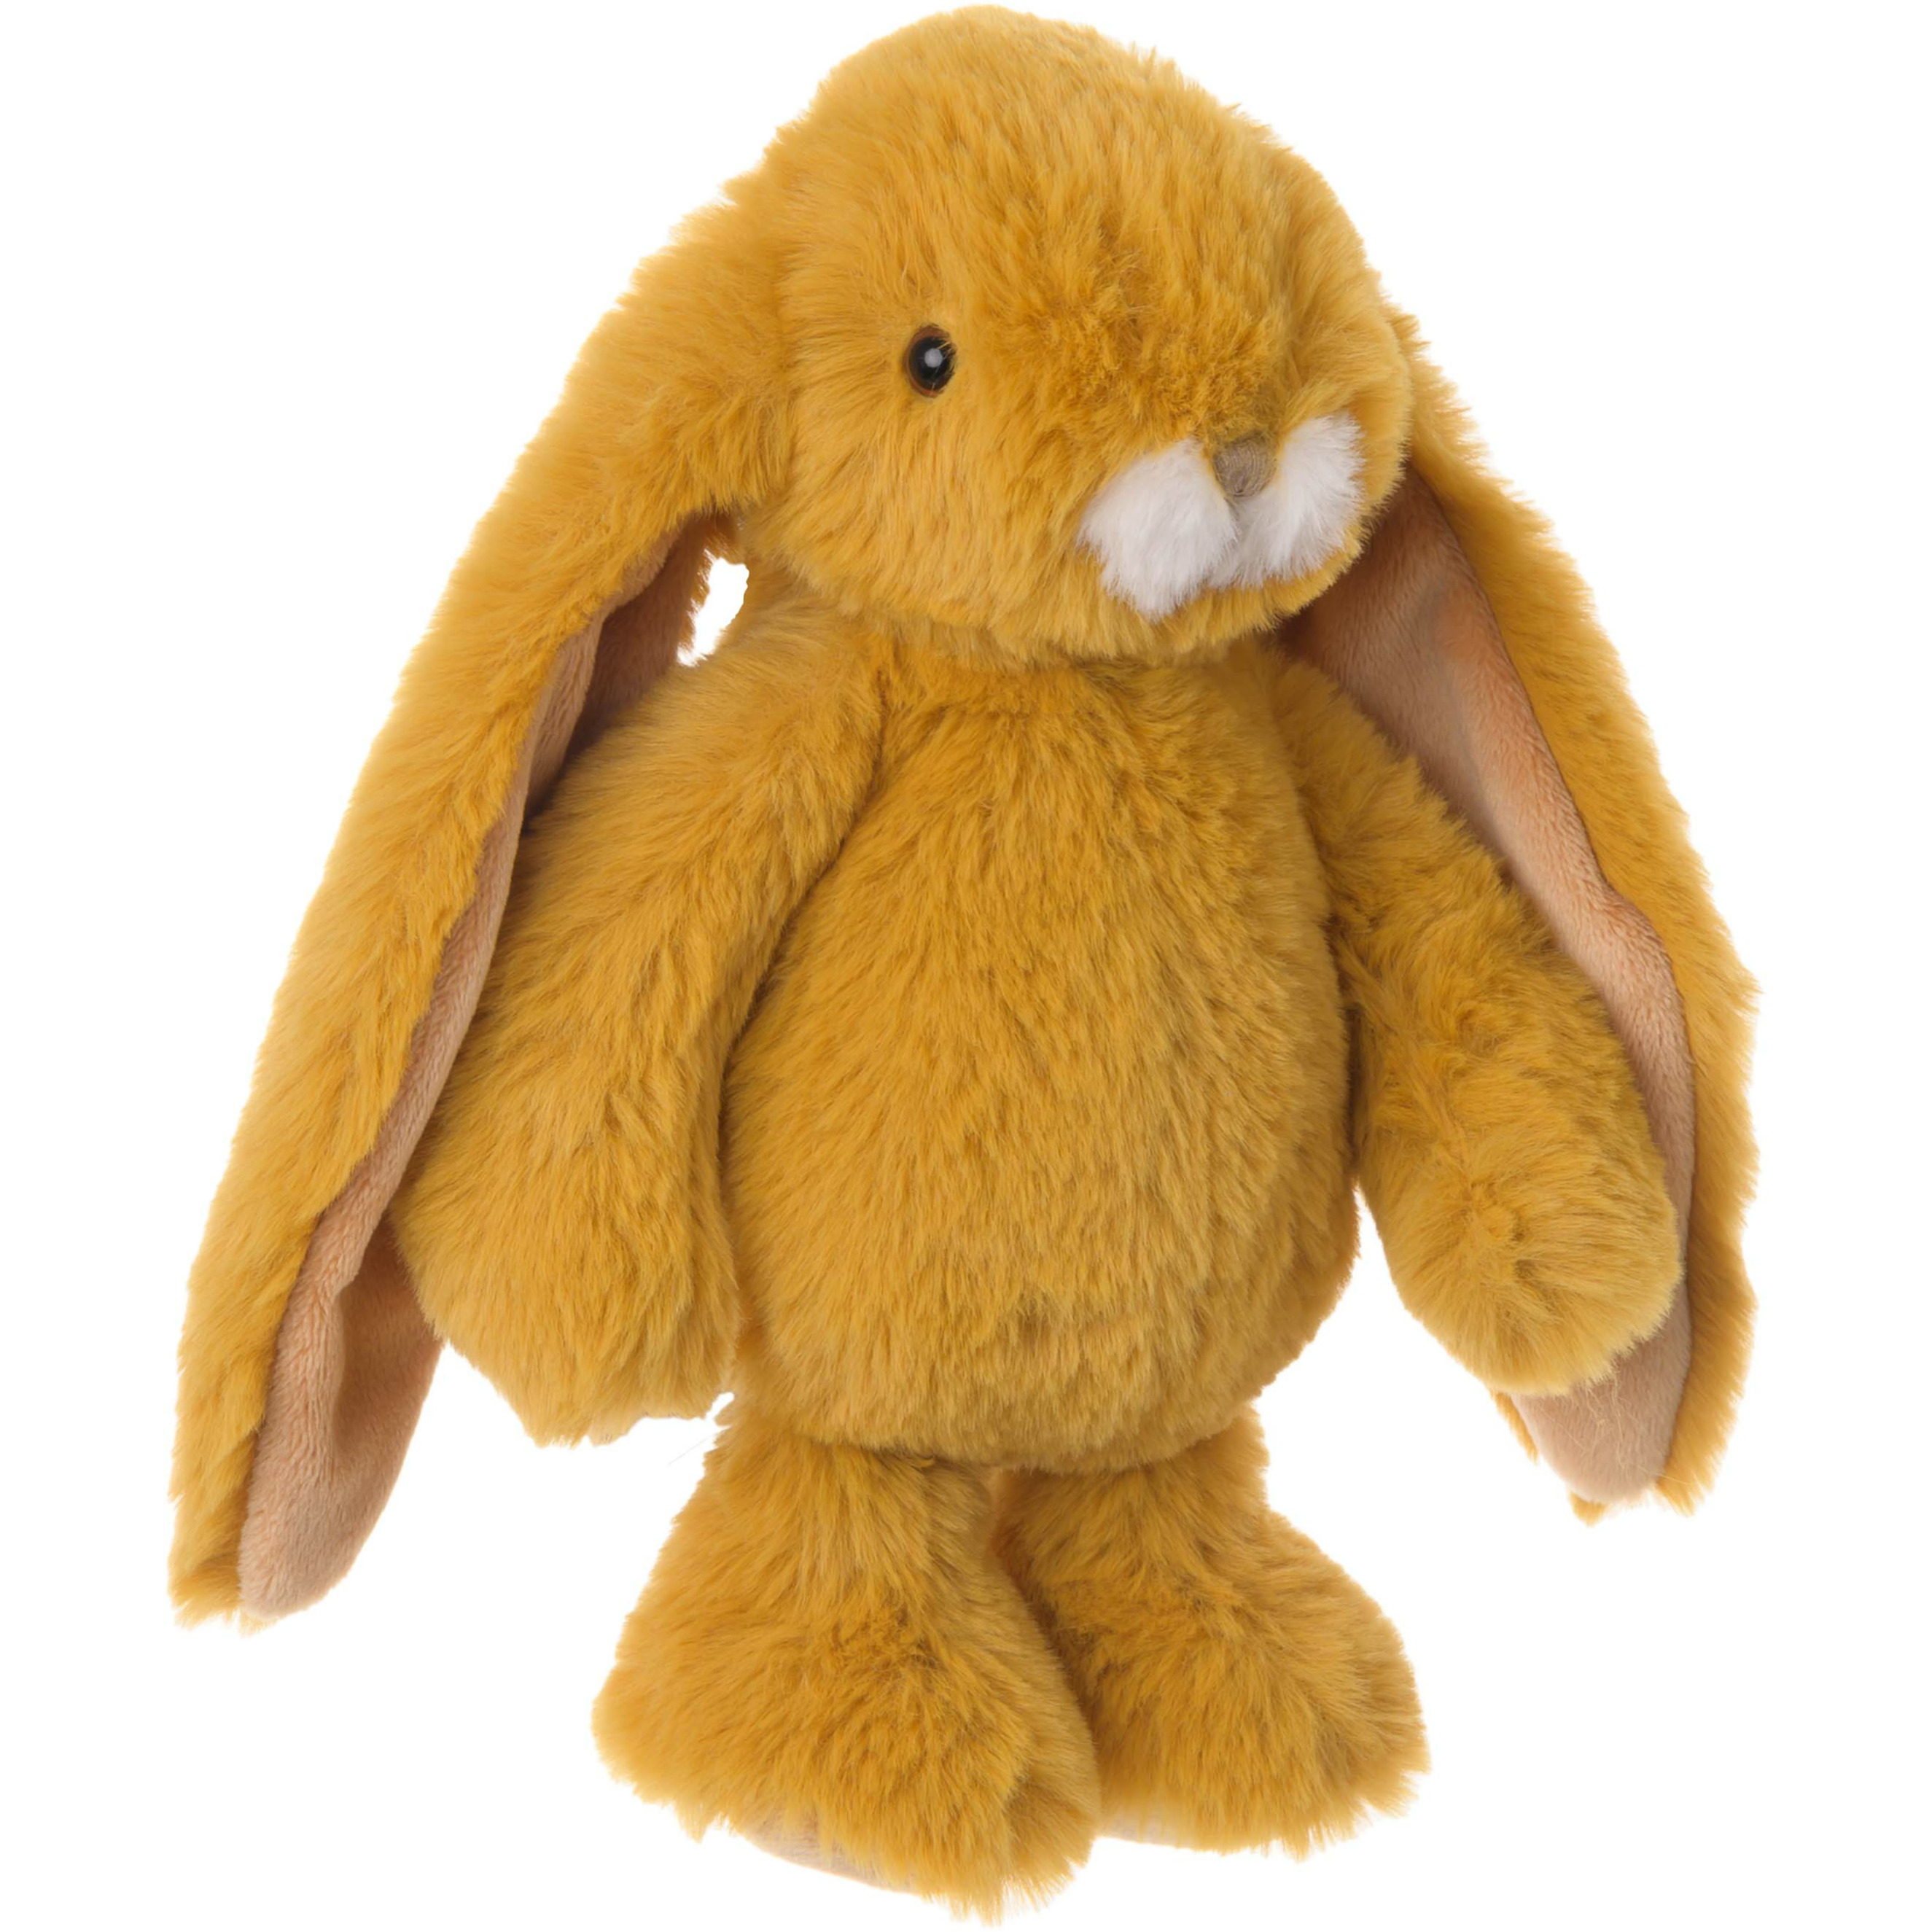 Bukowski pluche konijn knuffeldier dark okergeel staand 22 cm luxe knuffels